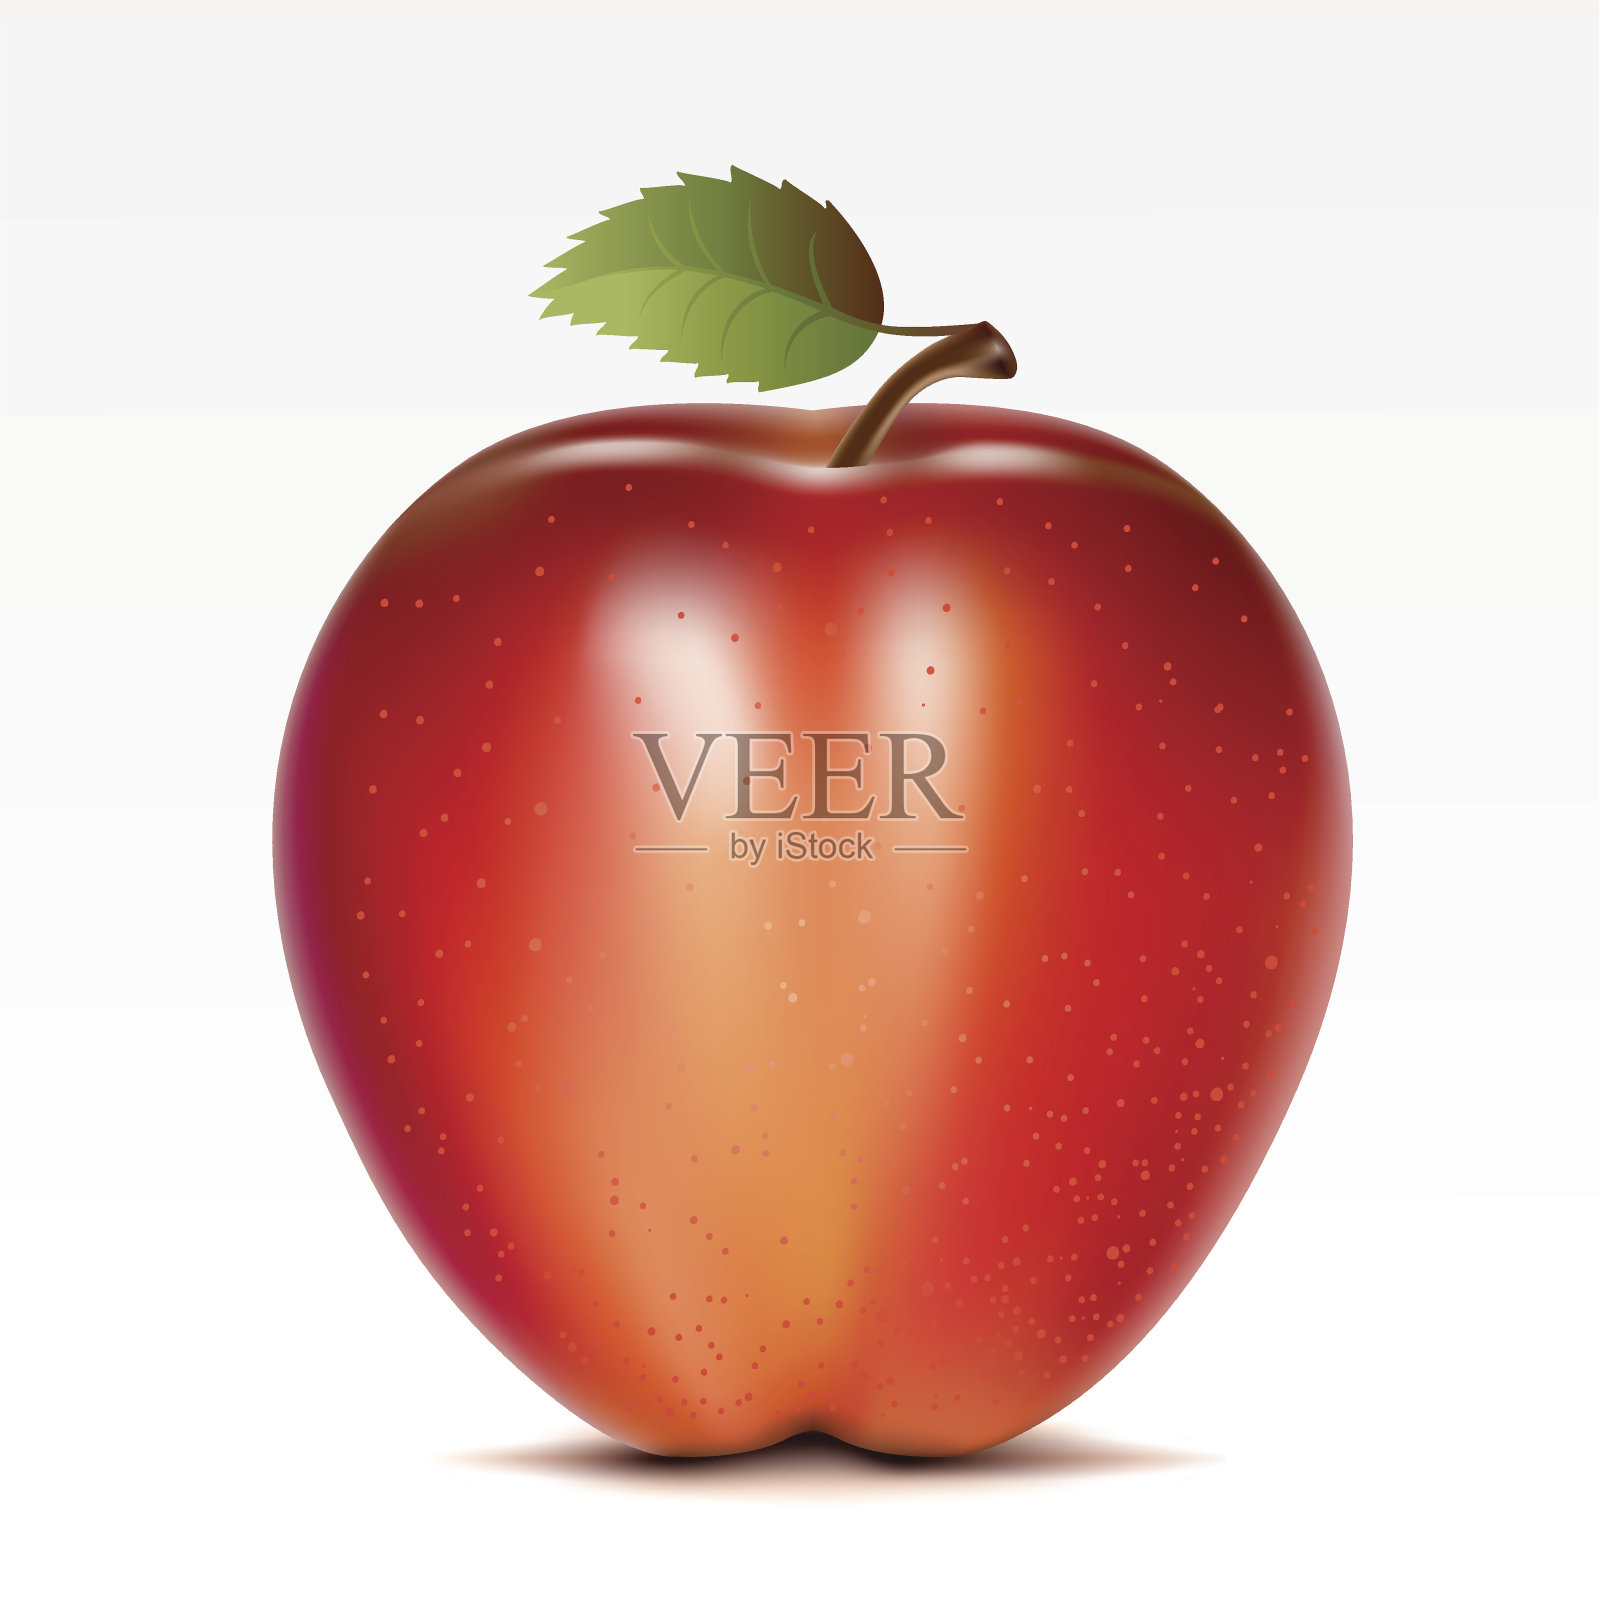 白色背景上的一个红苹果设计元素图片